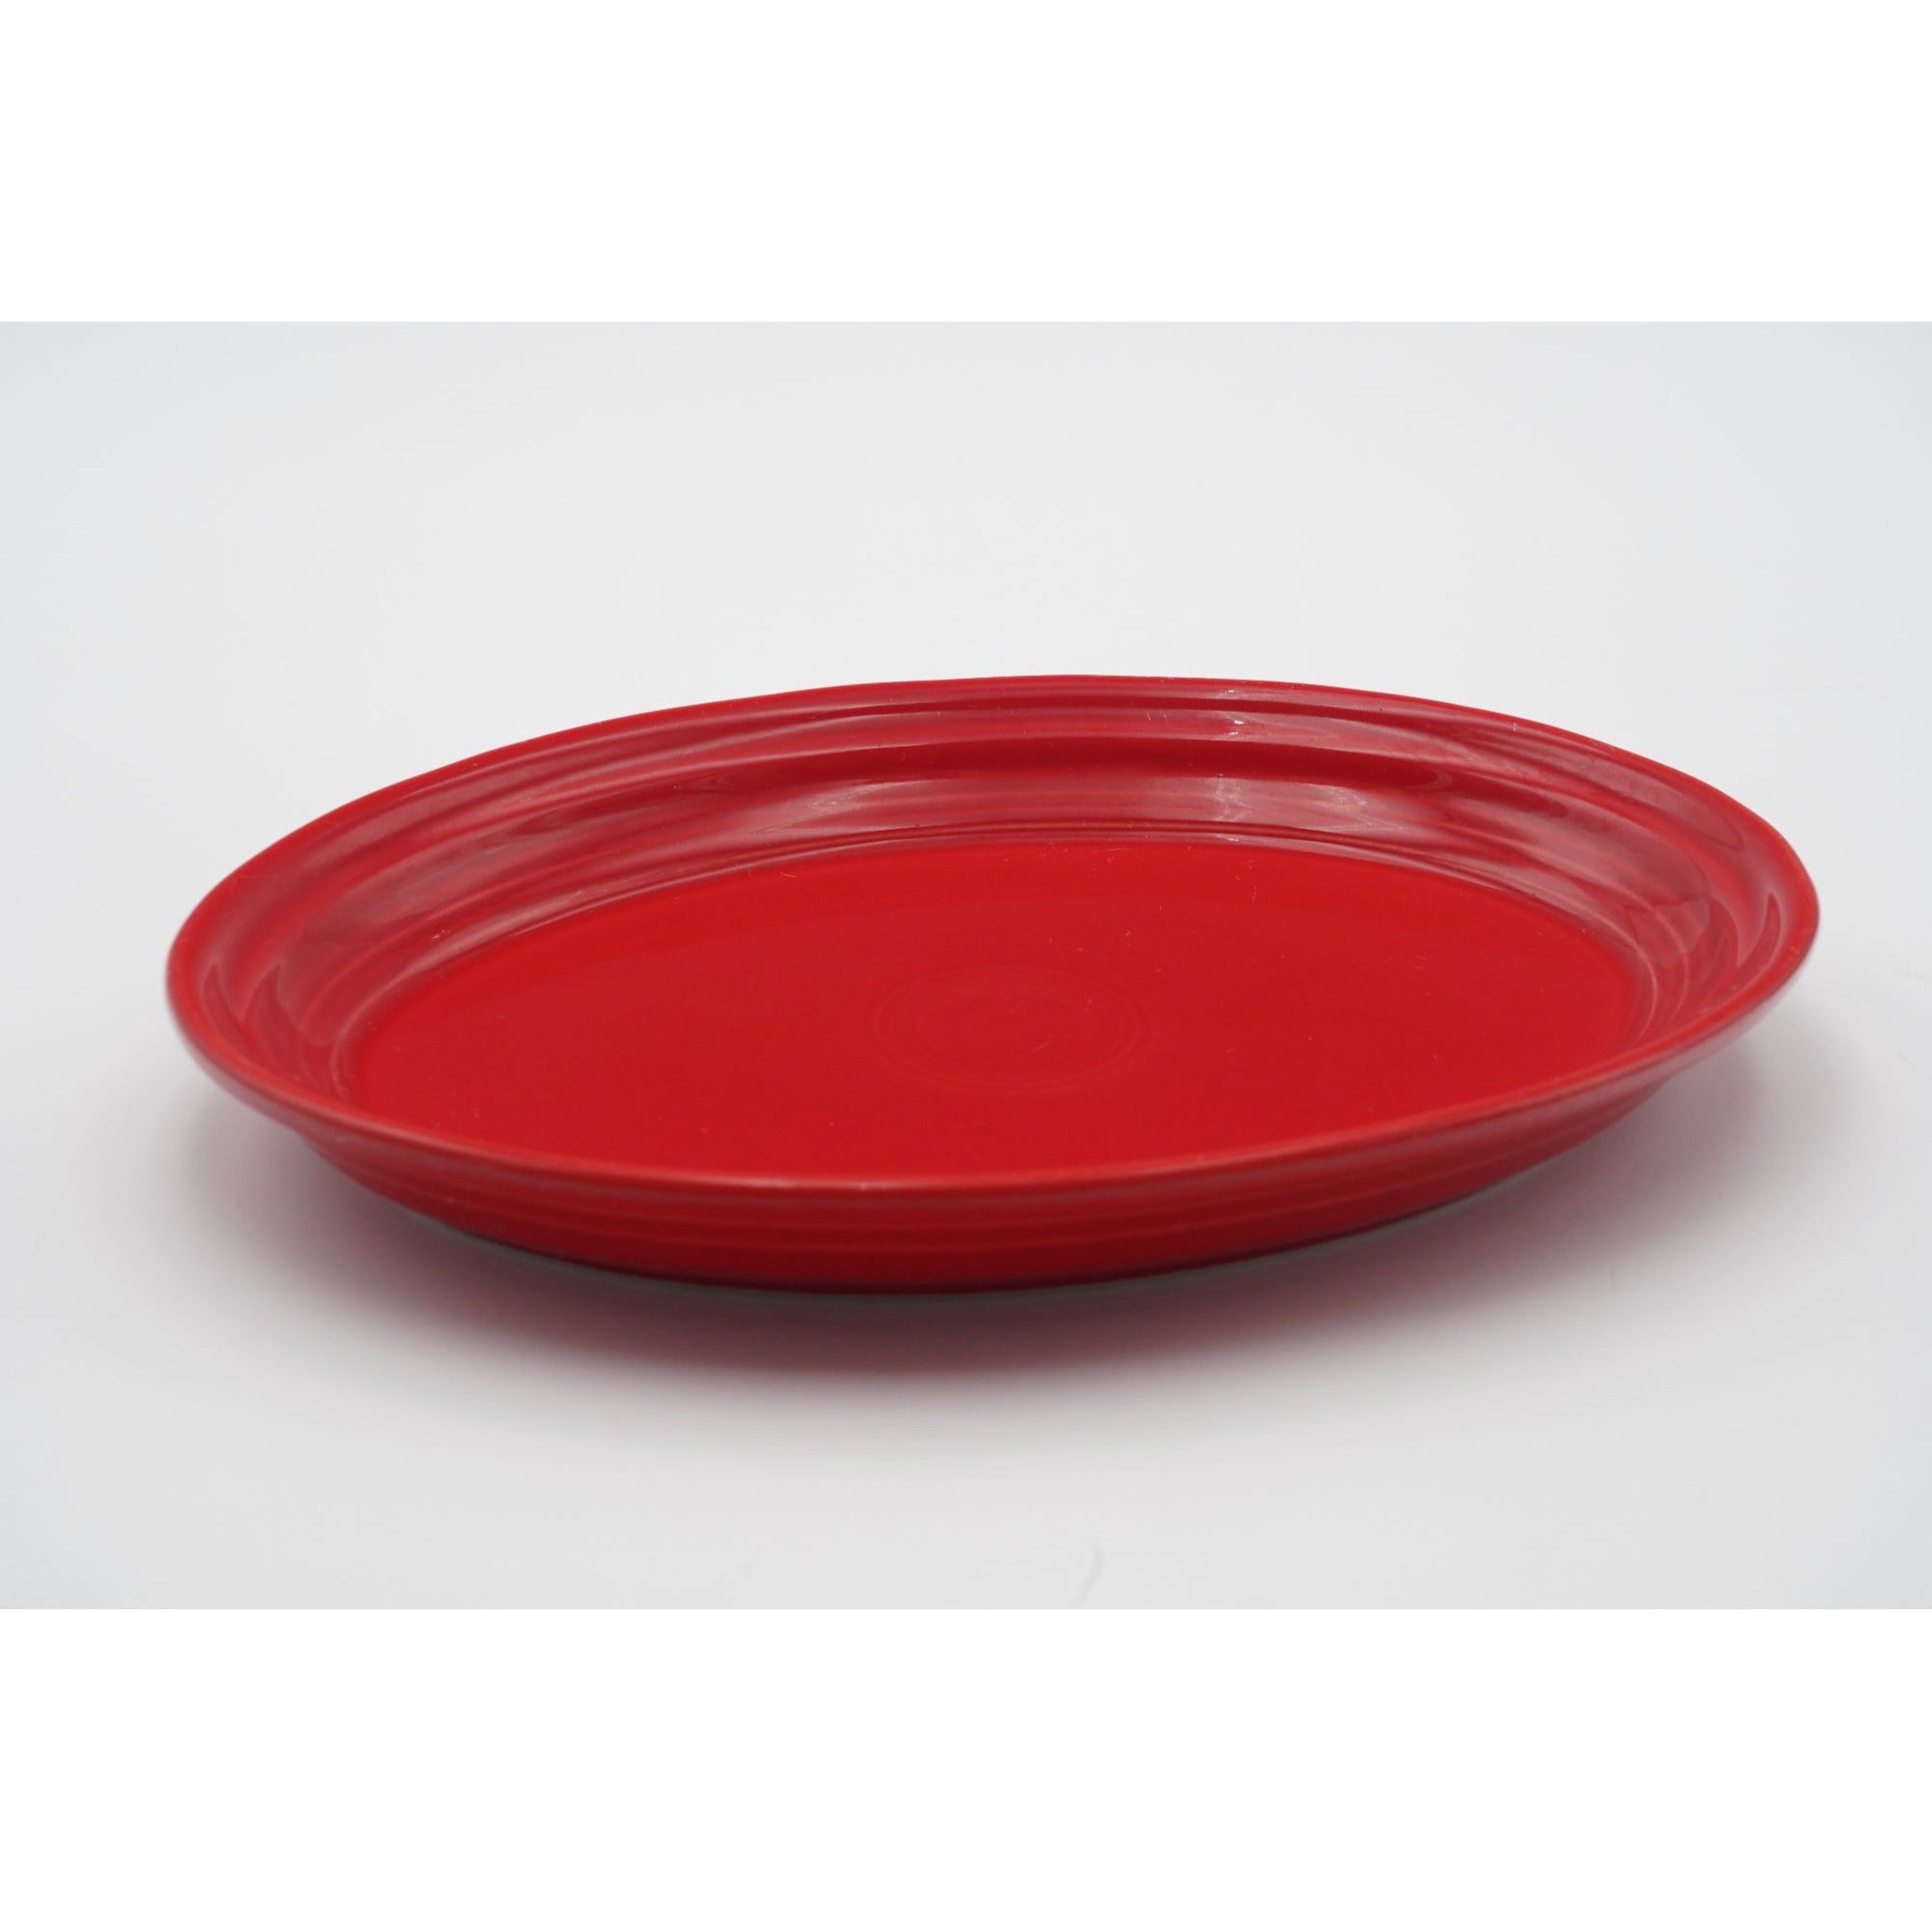 HLC Fiesta Scarlet Red 9" Oval Serving Platter